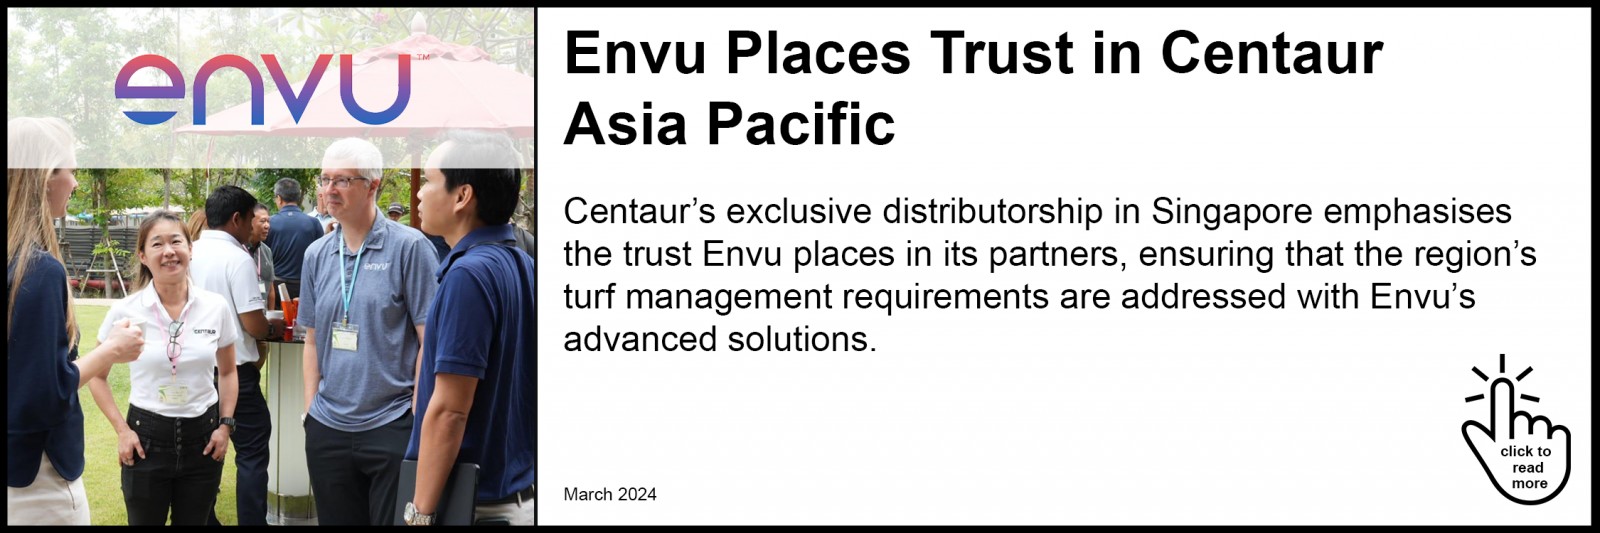 Envu Places Trust in Centaur Asia Pacific